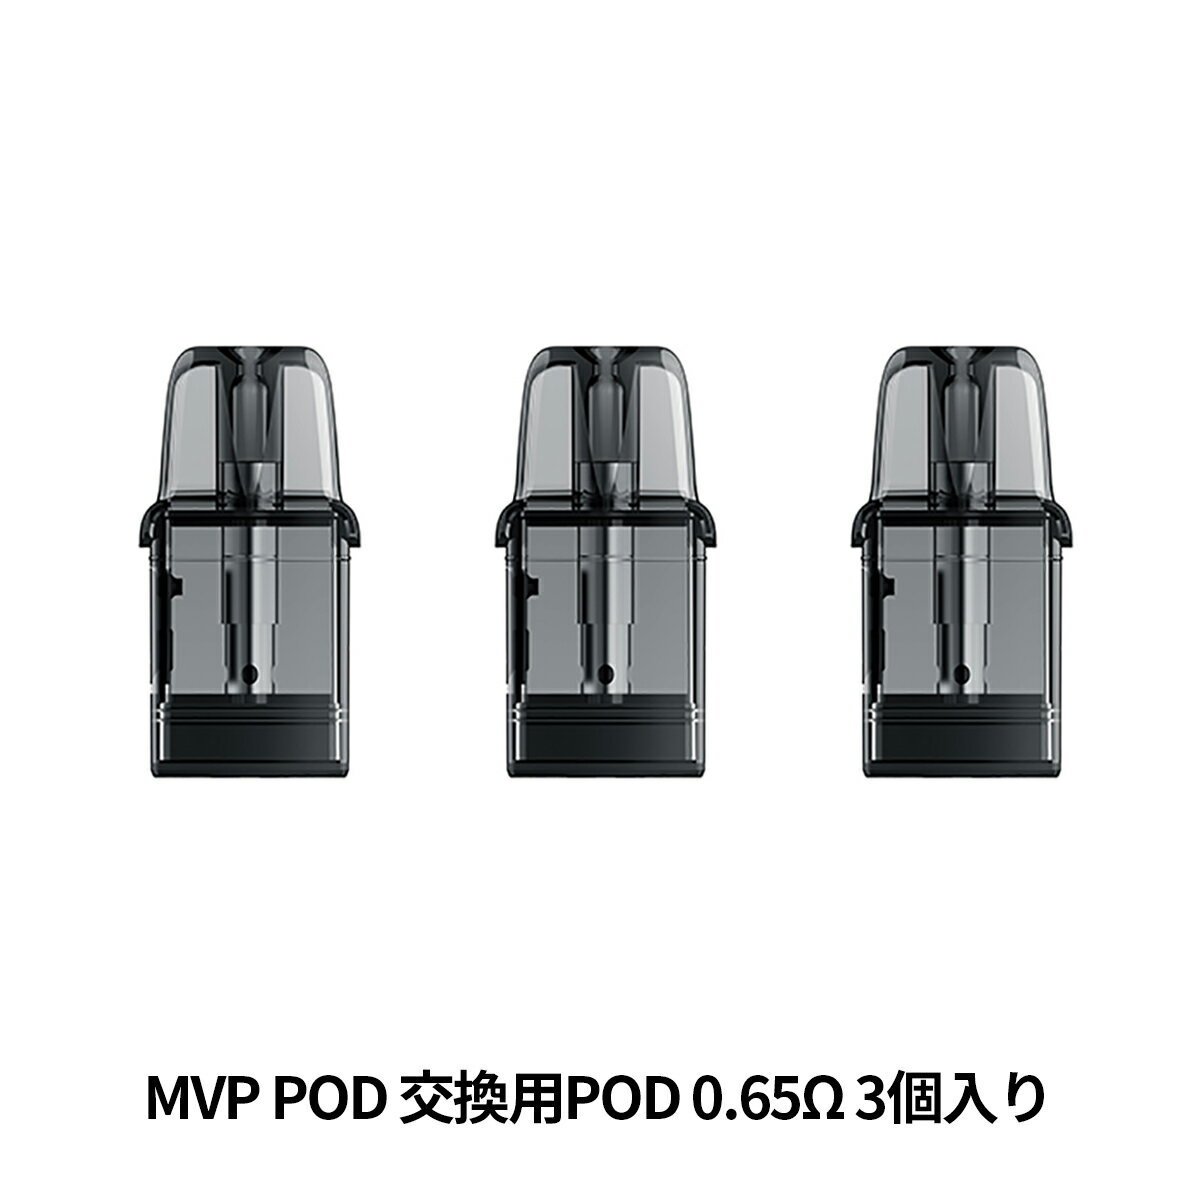 MVP POD KITの交換用PODカートリッジです。 ●0.65Ωのコイル内蔵型、MVP POD KIT用の交換用PODです。 ●リキッドは、2.7ml入ります。 ●3個入り1箱になります。 【スターターキットはこちら】 MVP POD KIT スターターキット 商品仕様 ブランド INNOKIN(イノキン) 商品名 MVP POD KIT 交換用 POD(エムブイピー ポッド) セット内容 ・0.65ΩPODカートリッジ 3個入り × 1箱 リキッド容量 2.7ml 対応商品 【スターターキットはこちら】 MVP POD KIT スターターキット同梱おすすめ商品はこちらご購入はこちらからご購入はこちらから